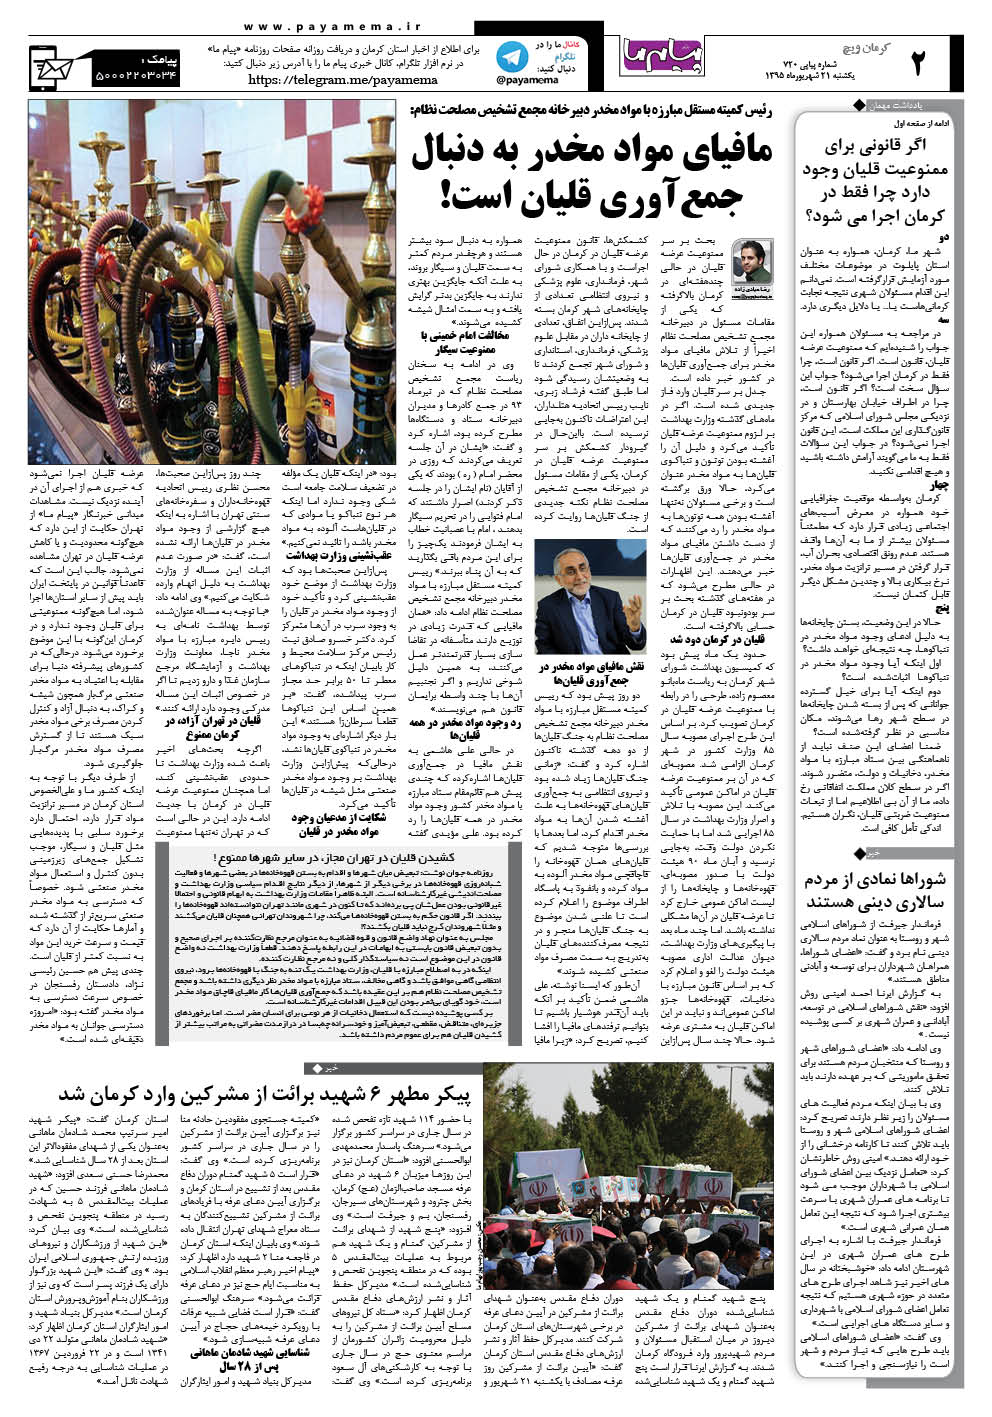 صفحه کرمان ویج شماره 720 روزنامه پیام ما